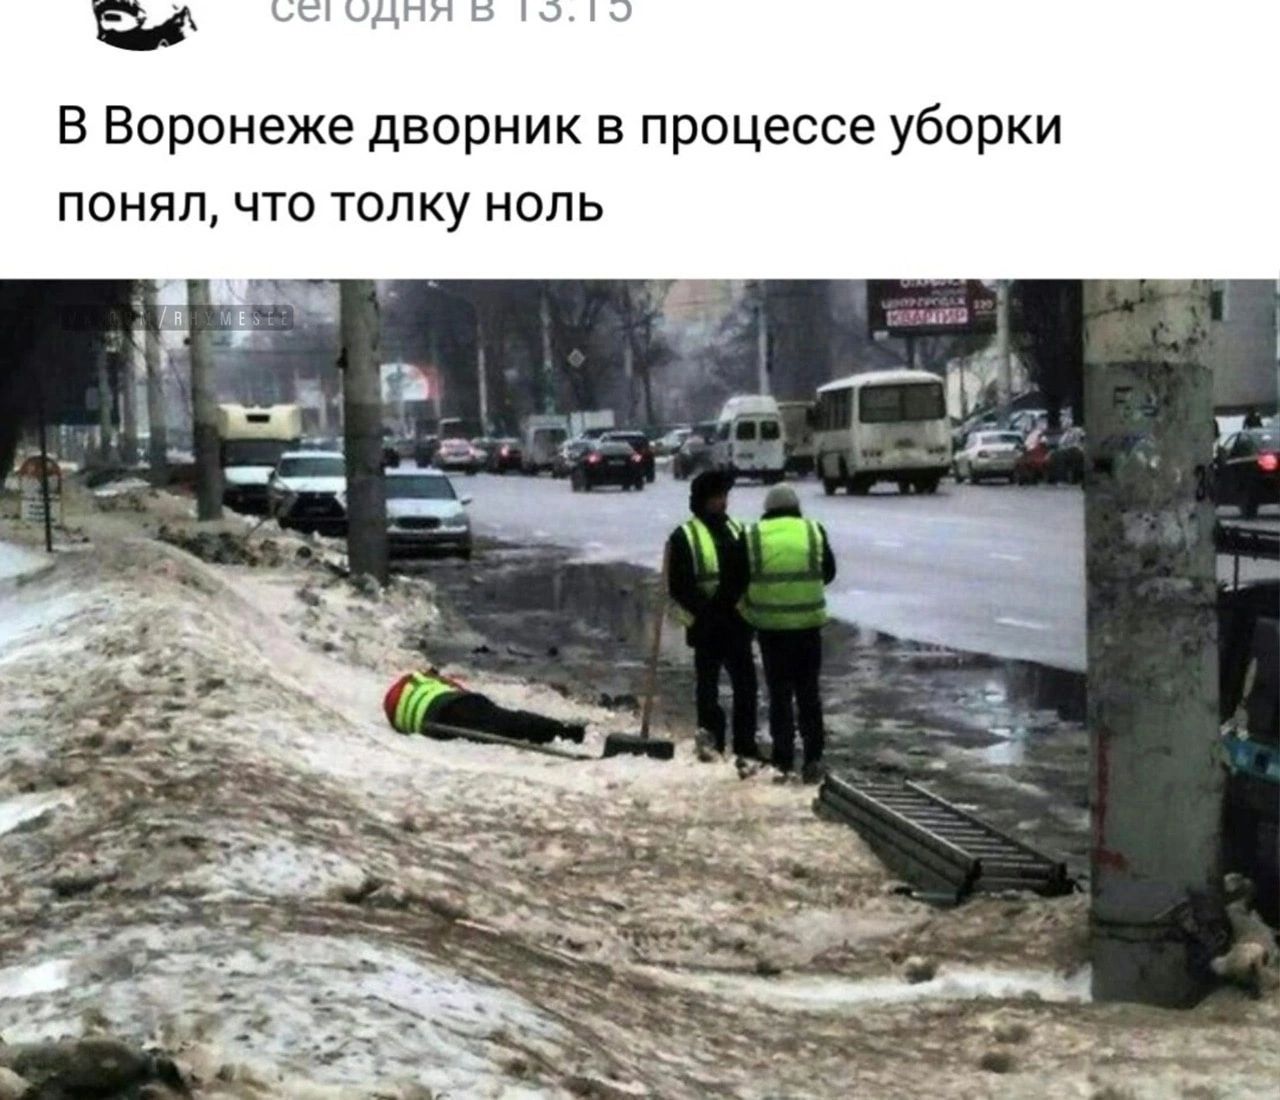 В Воронеже дворник в процессе уборки понял что толку ноль